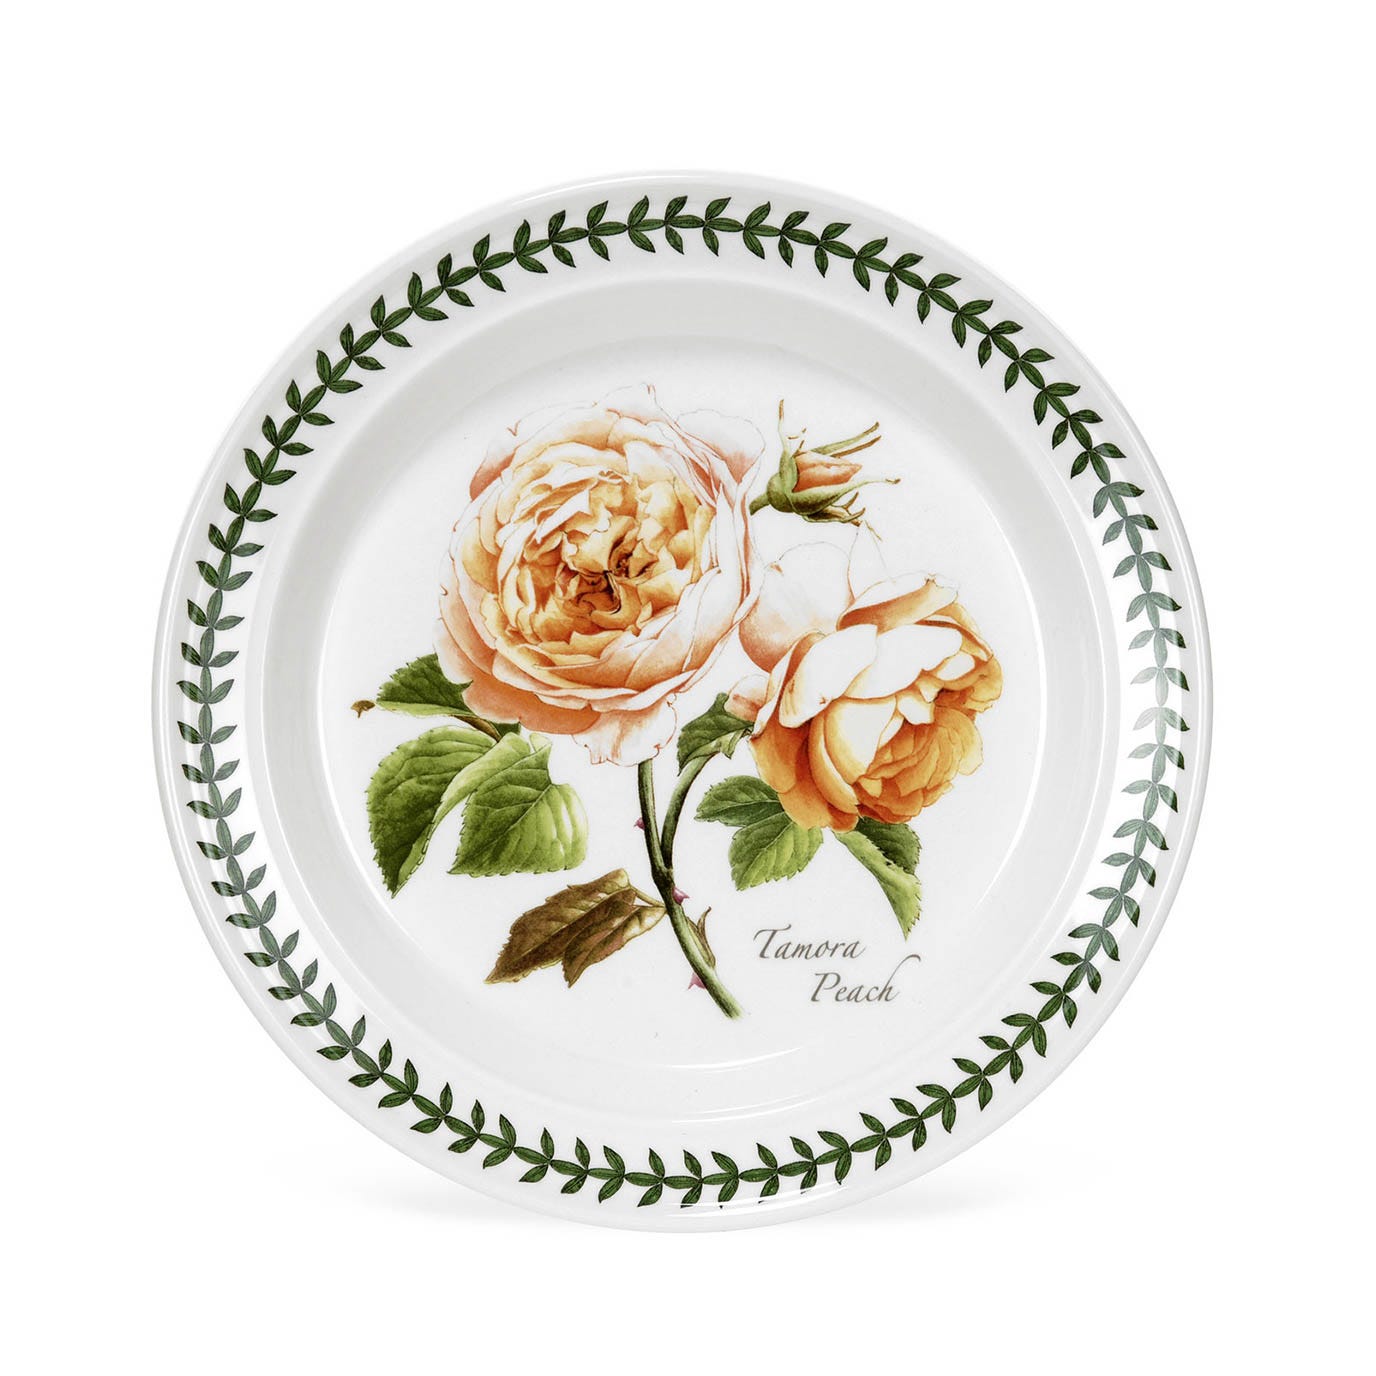 Botanic Roses Tamora Peach Plate, 20cm